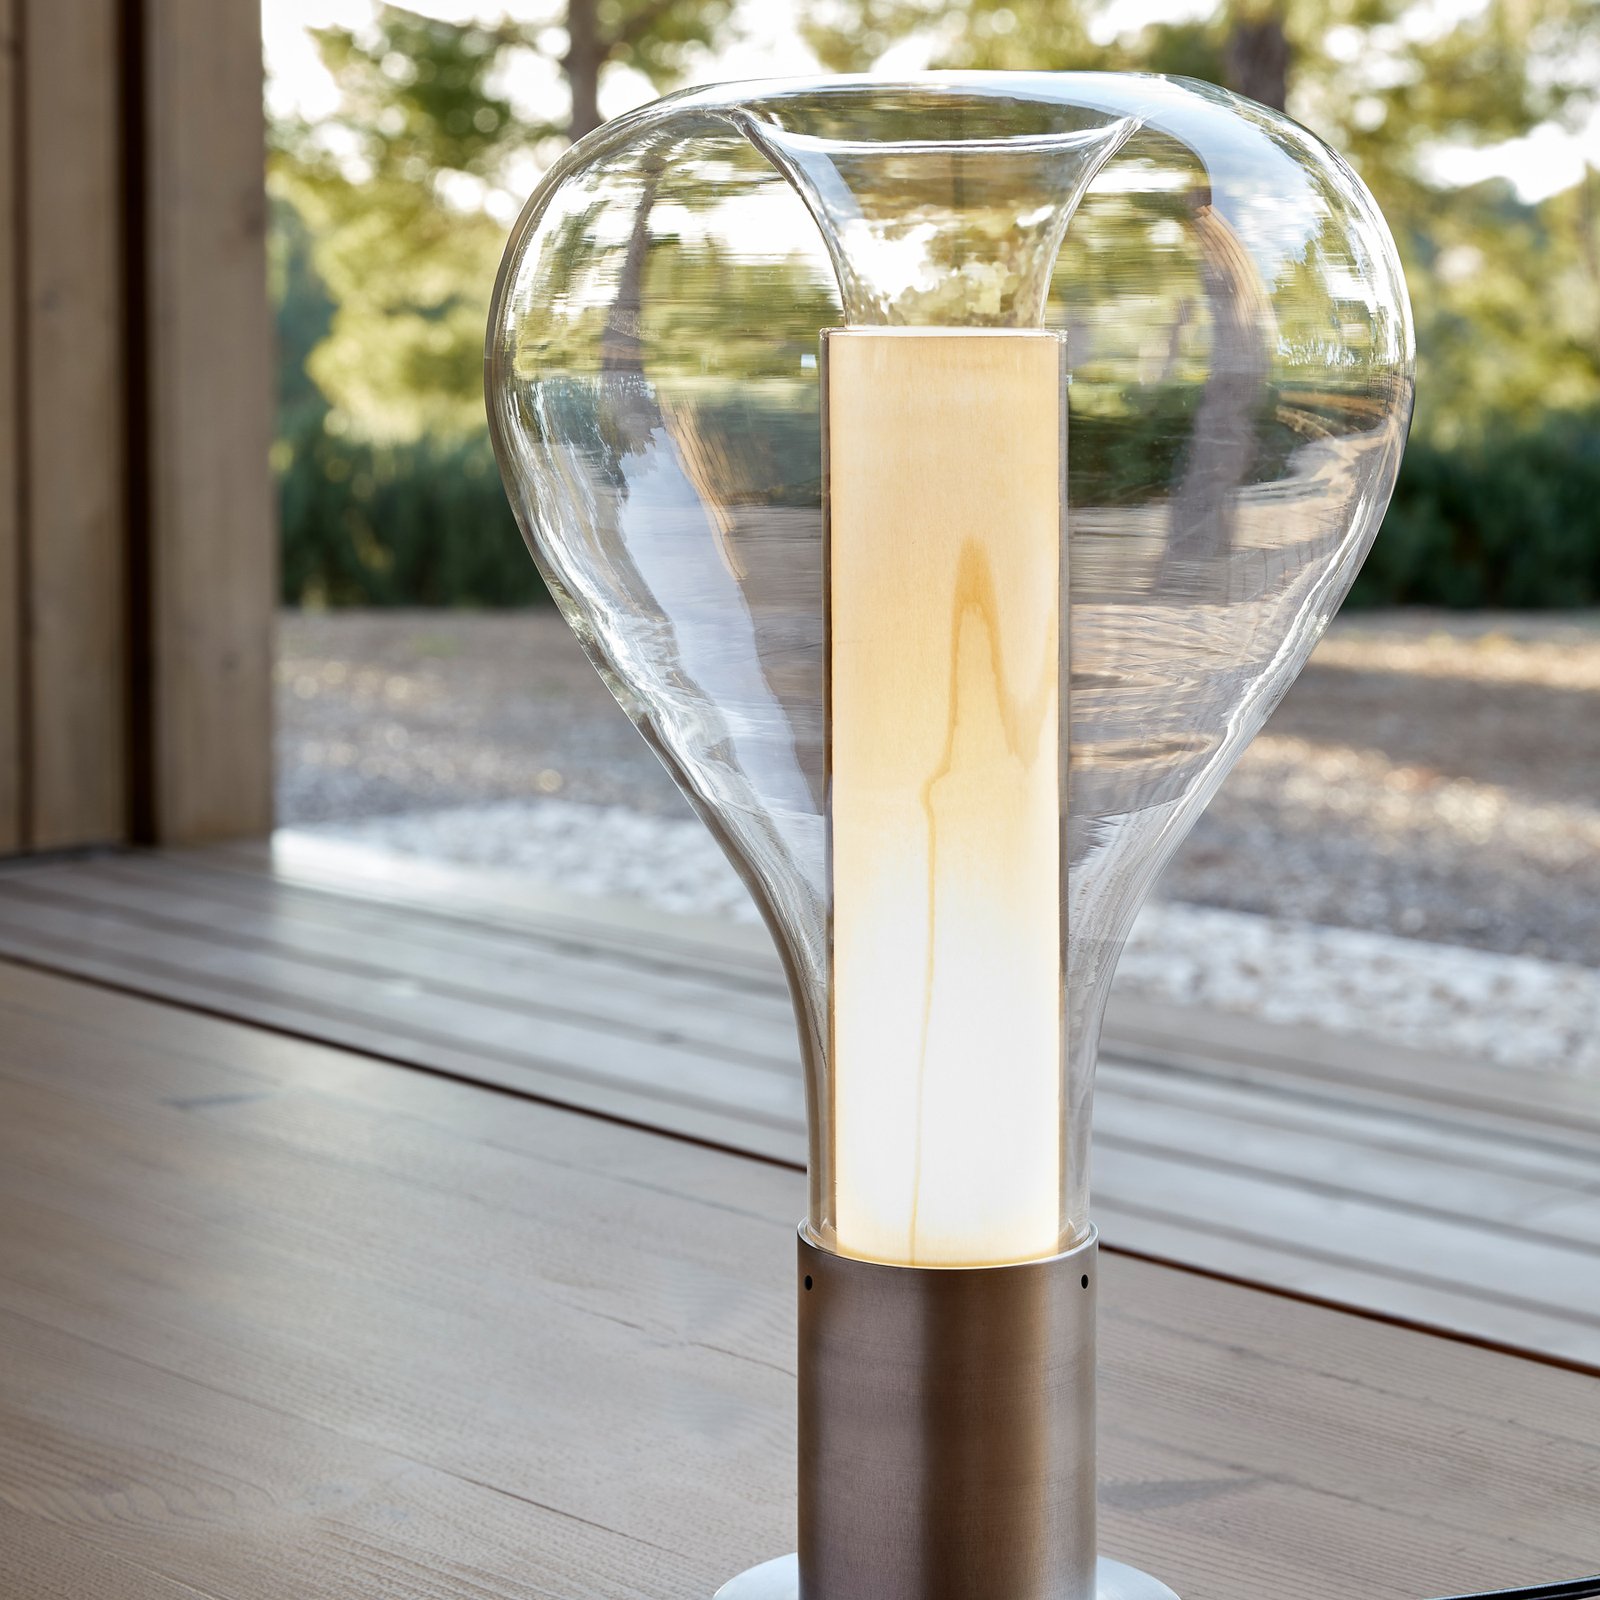 LZF Eris LED tafellamp glas aluminium/ivoor